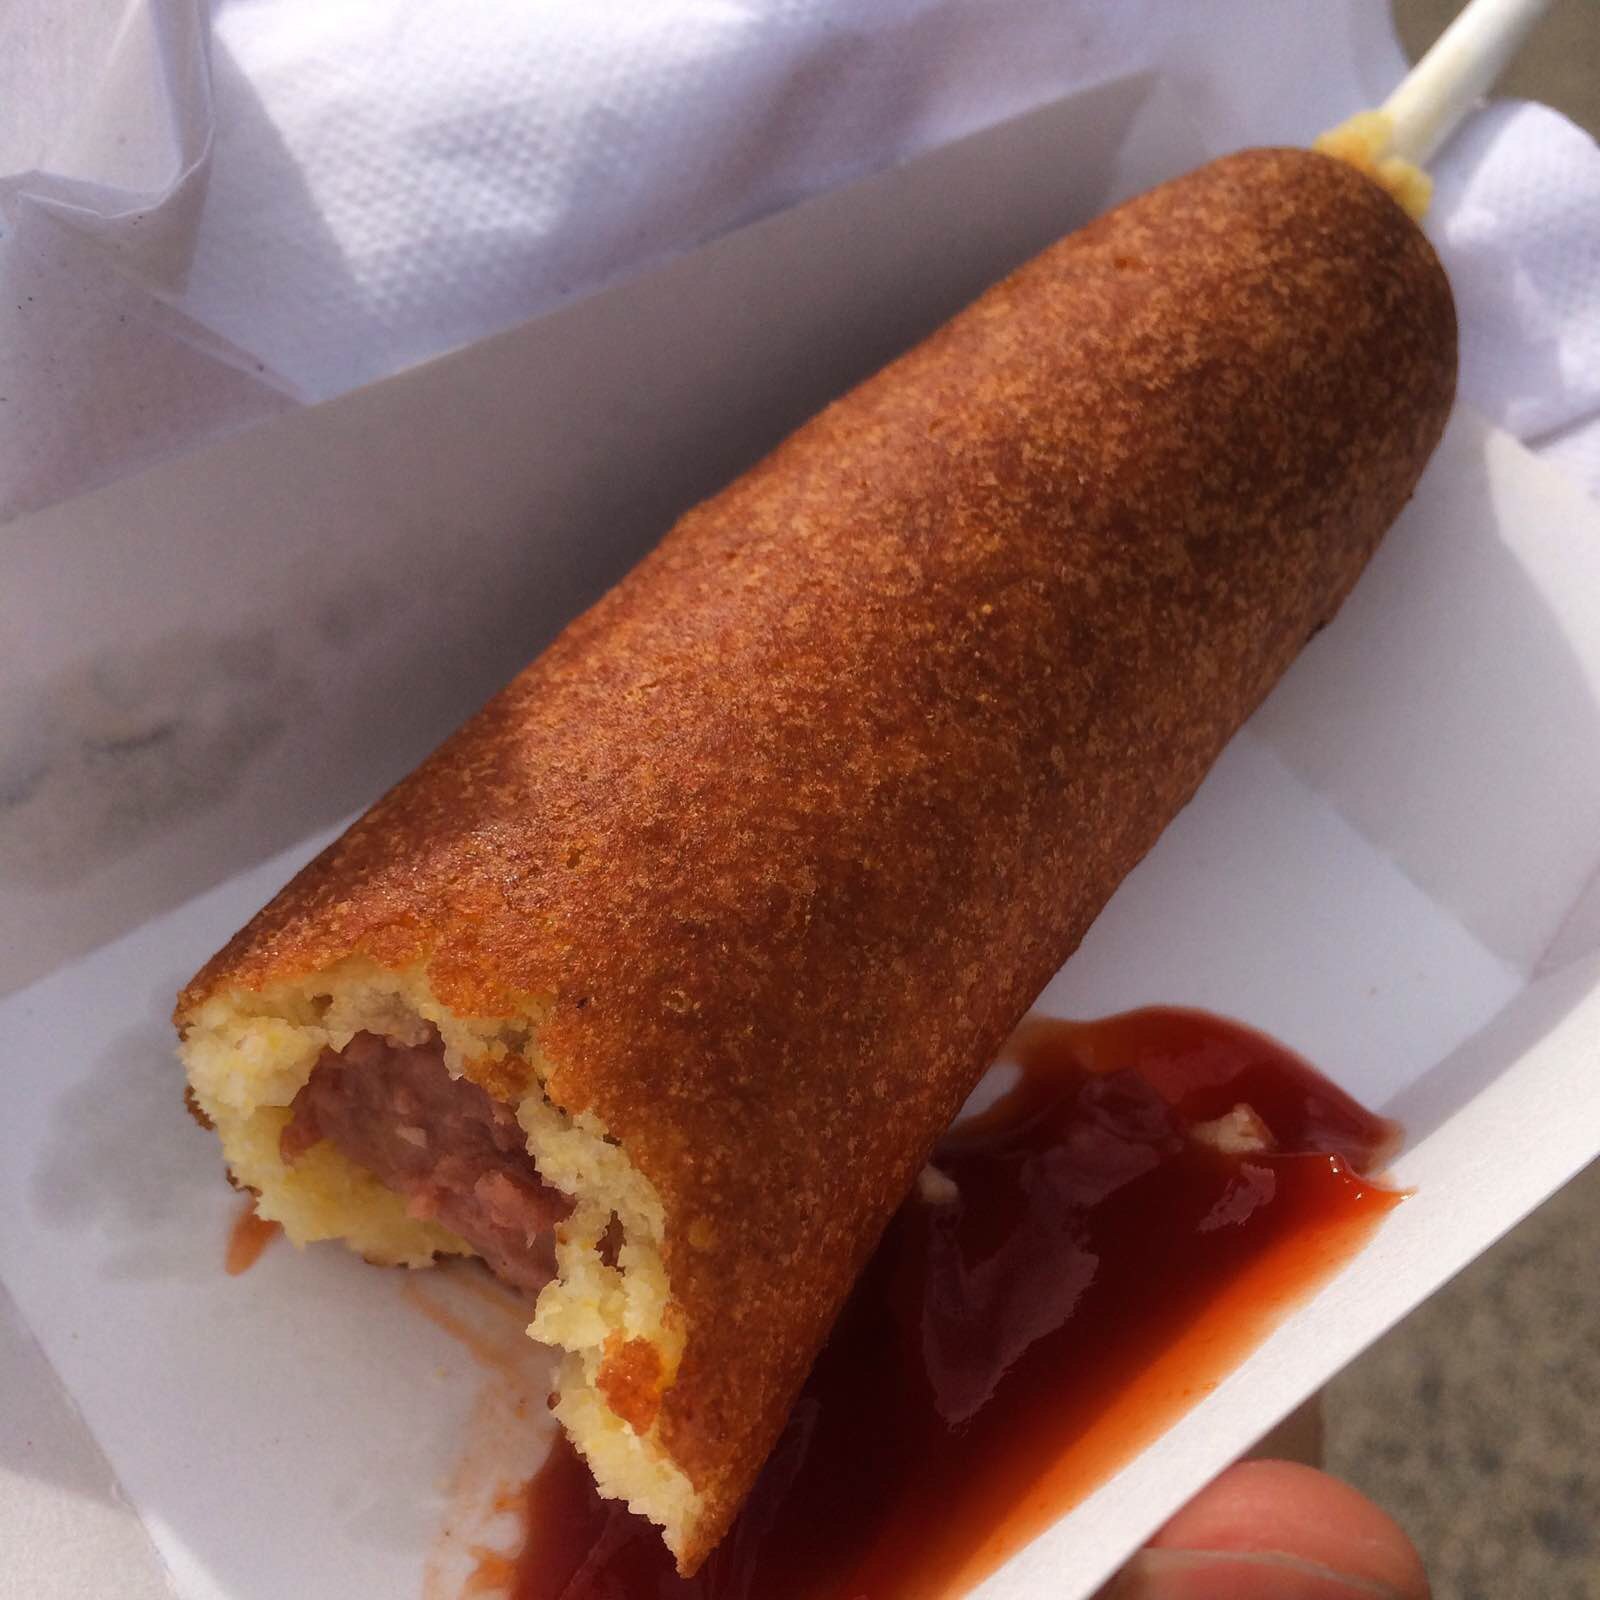 玉米热狗 hotdog on stick